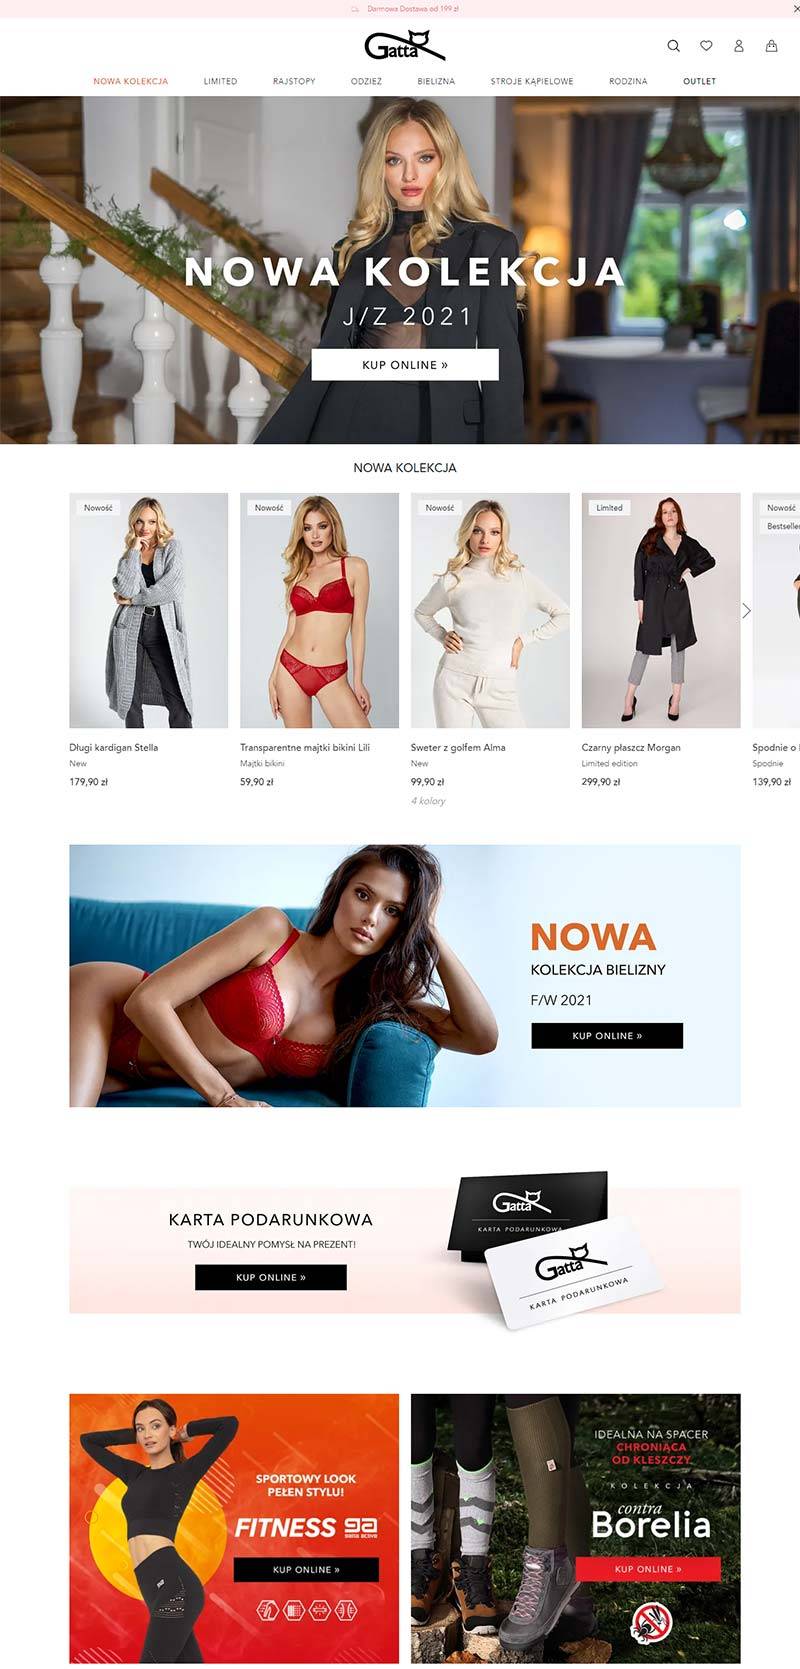 Gatta 波兰紧身衣服饰品牌购物网站